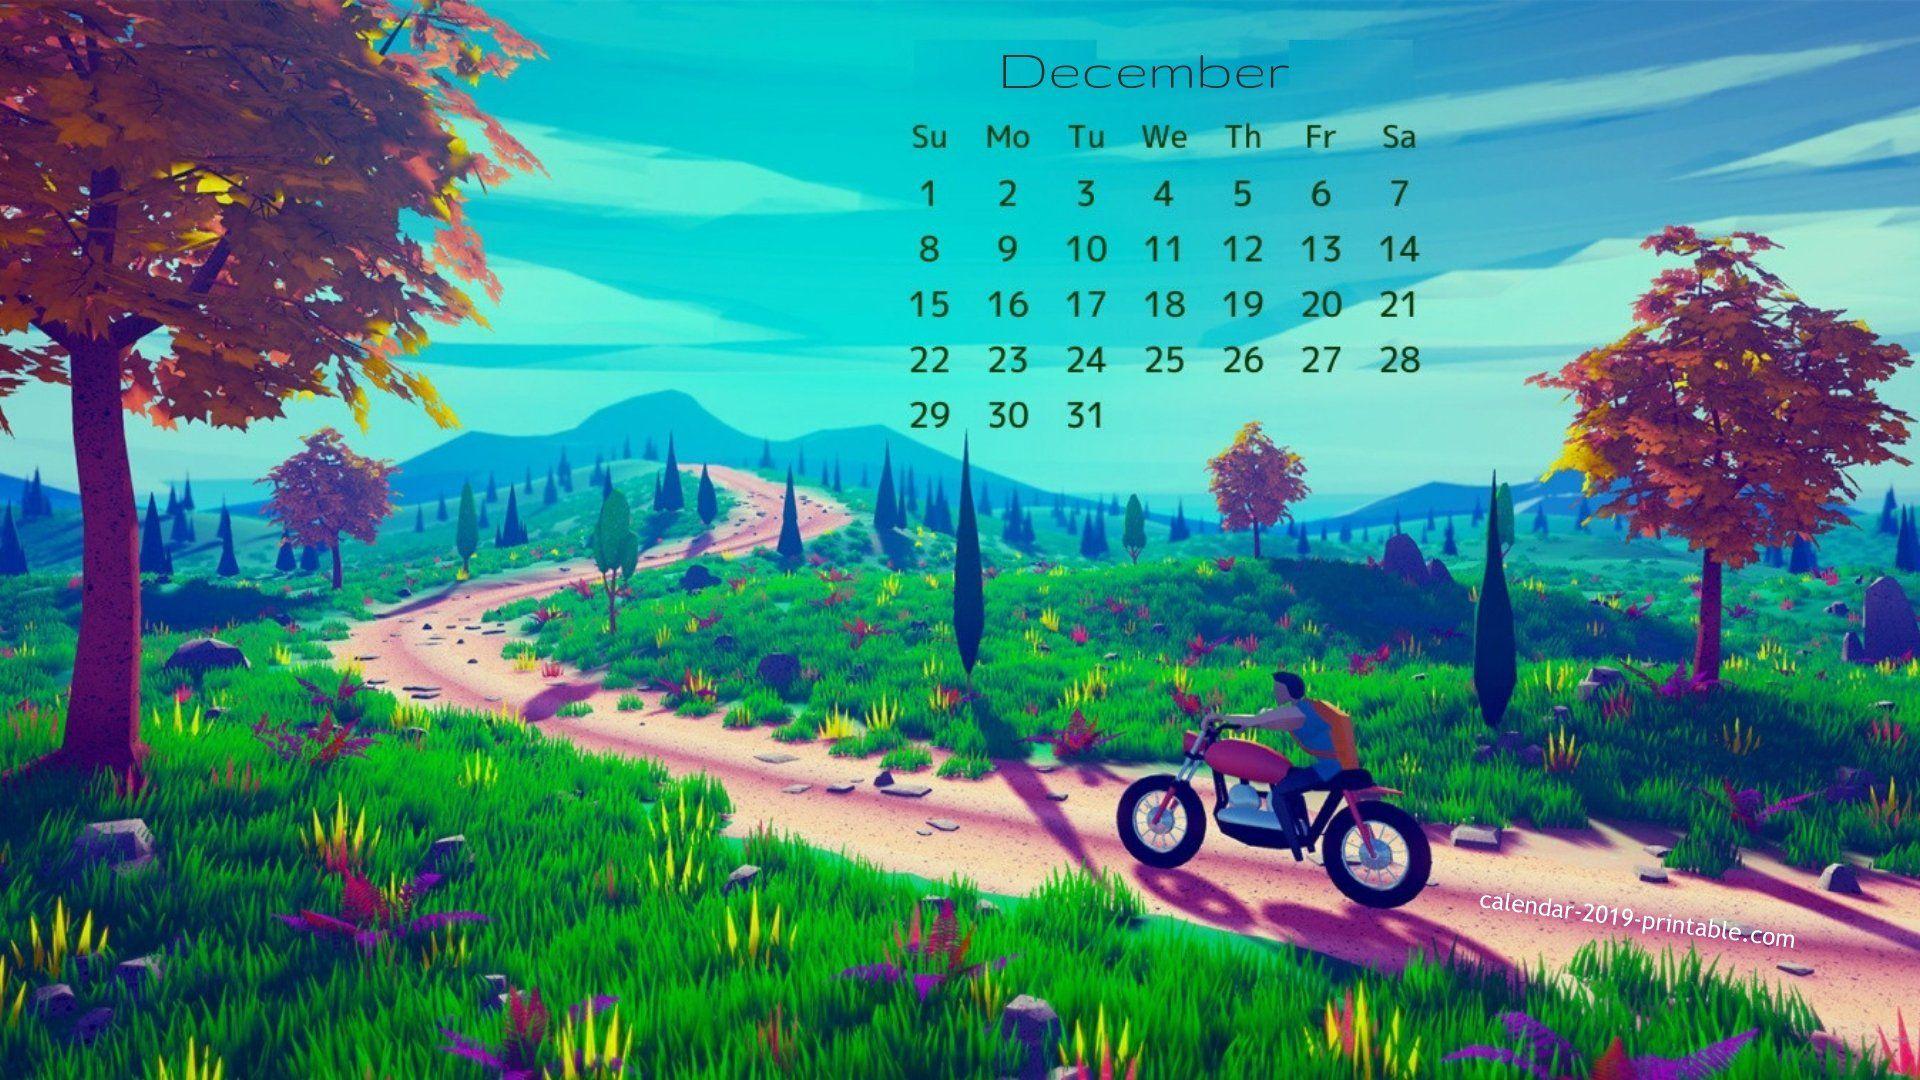 december 2019 calendar wallpaper Calendars. Calendar